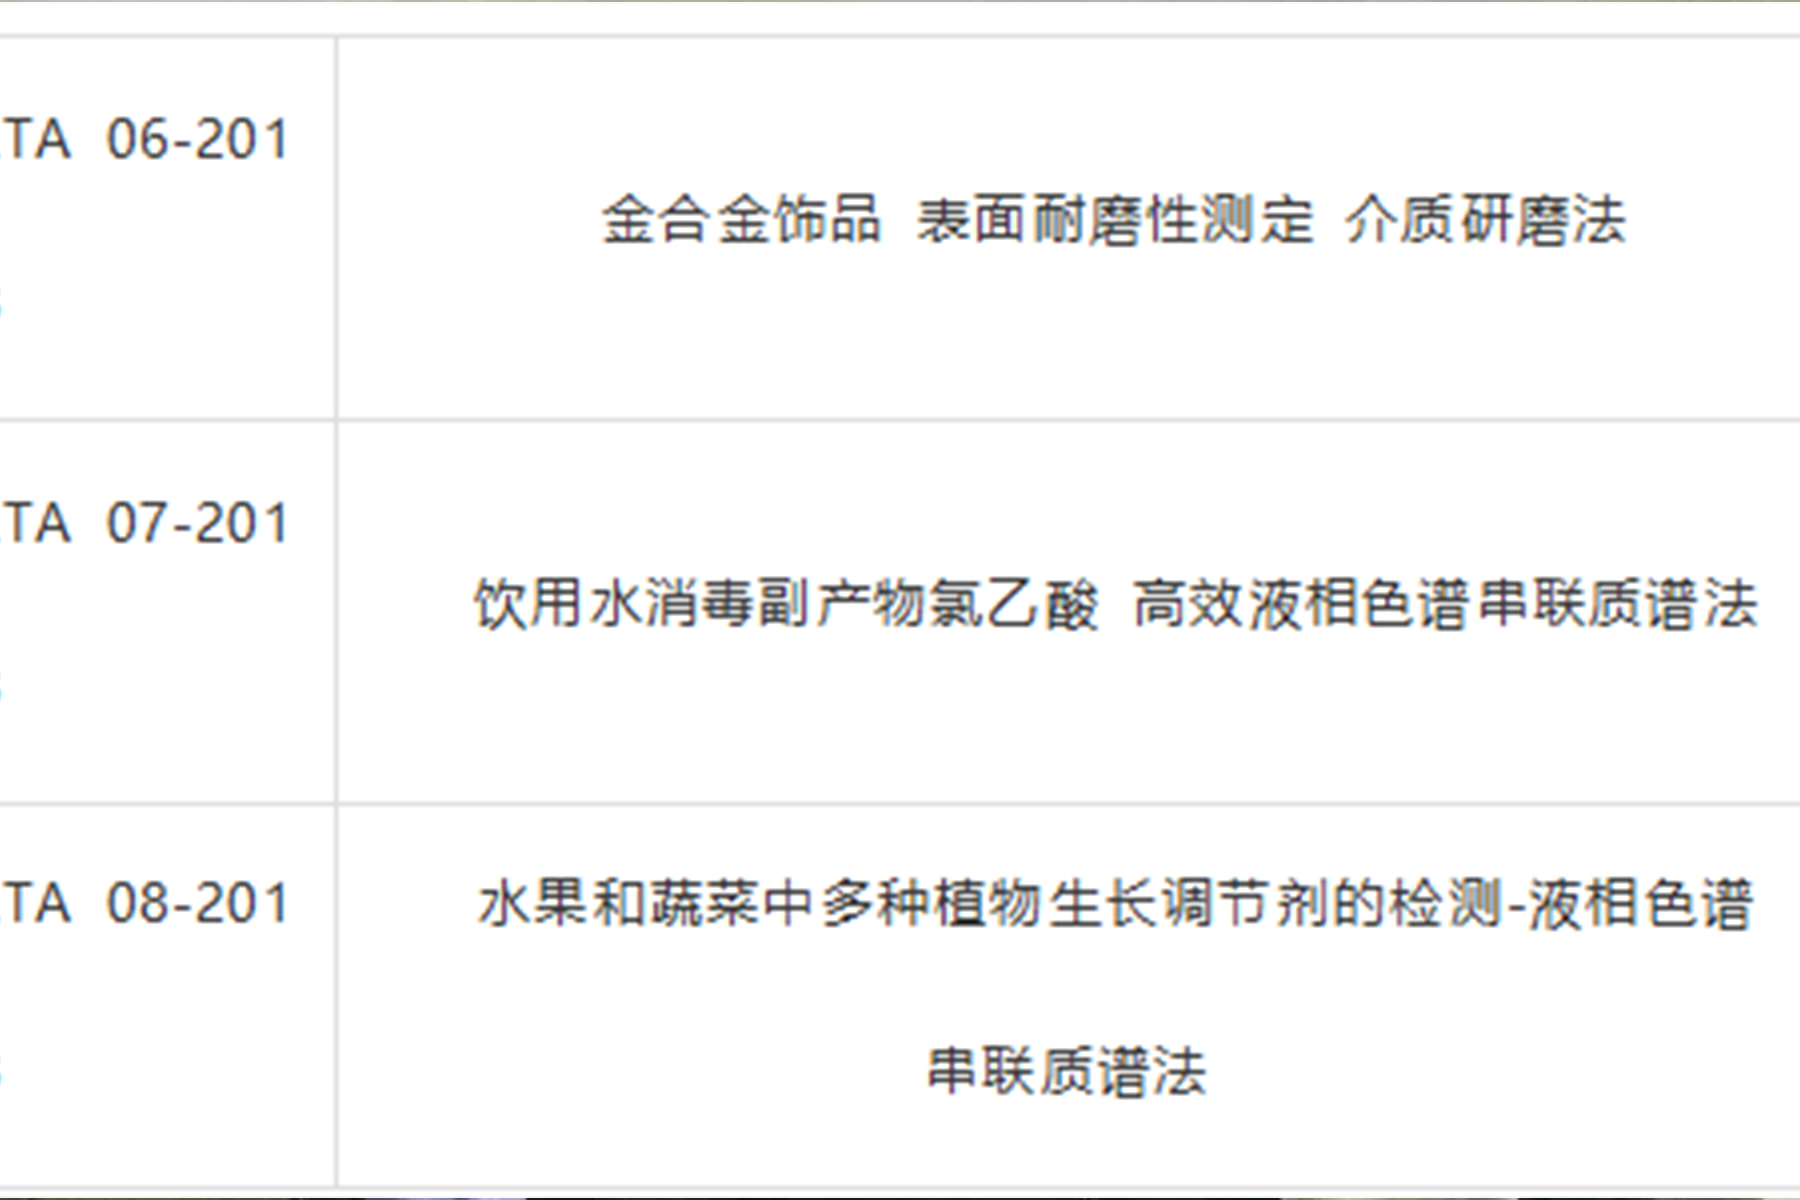 深圳市分析测试协会 关于发布3项团体标准的通知